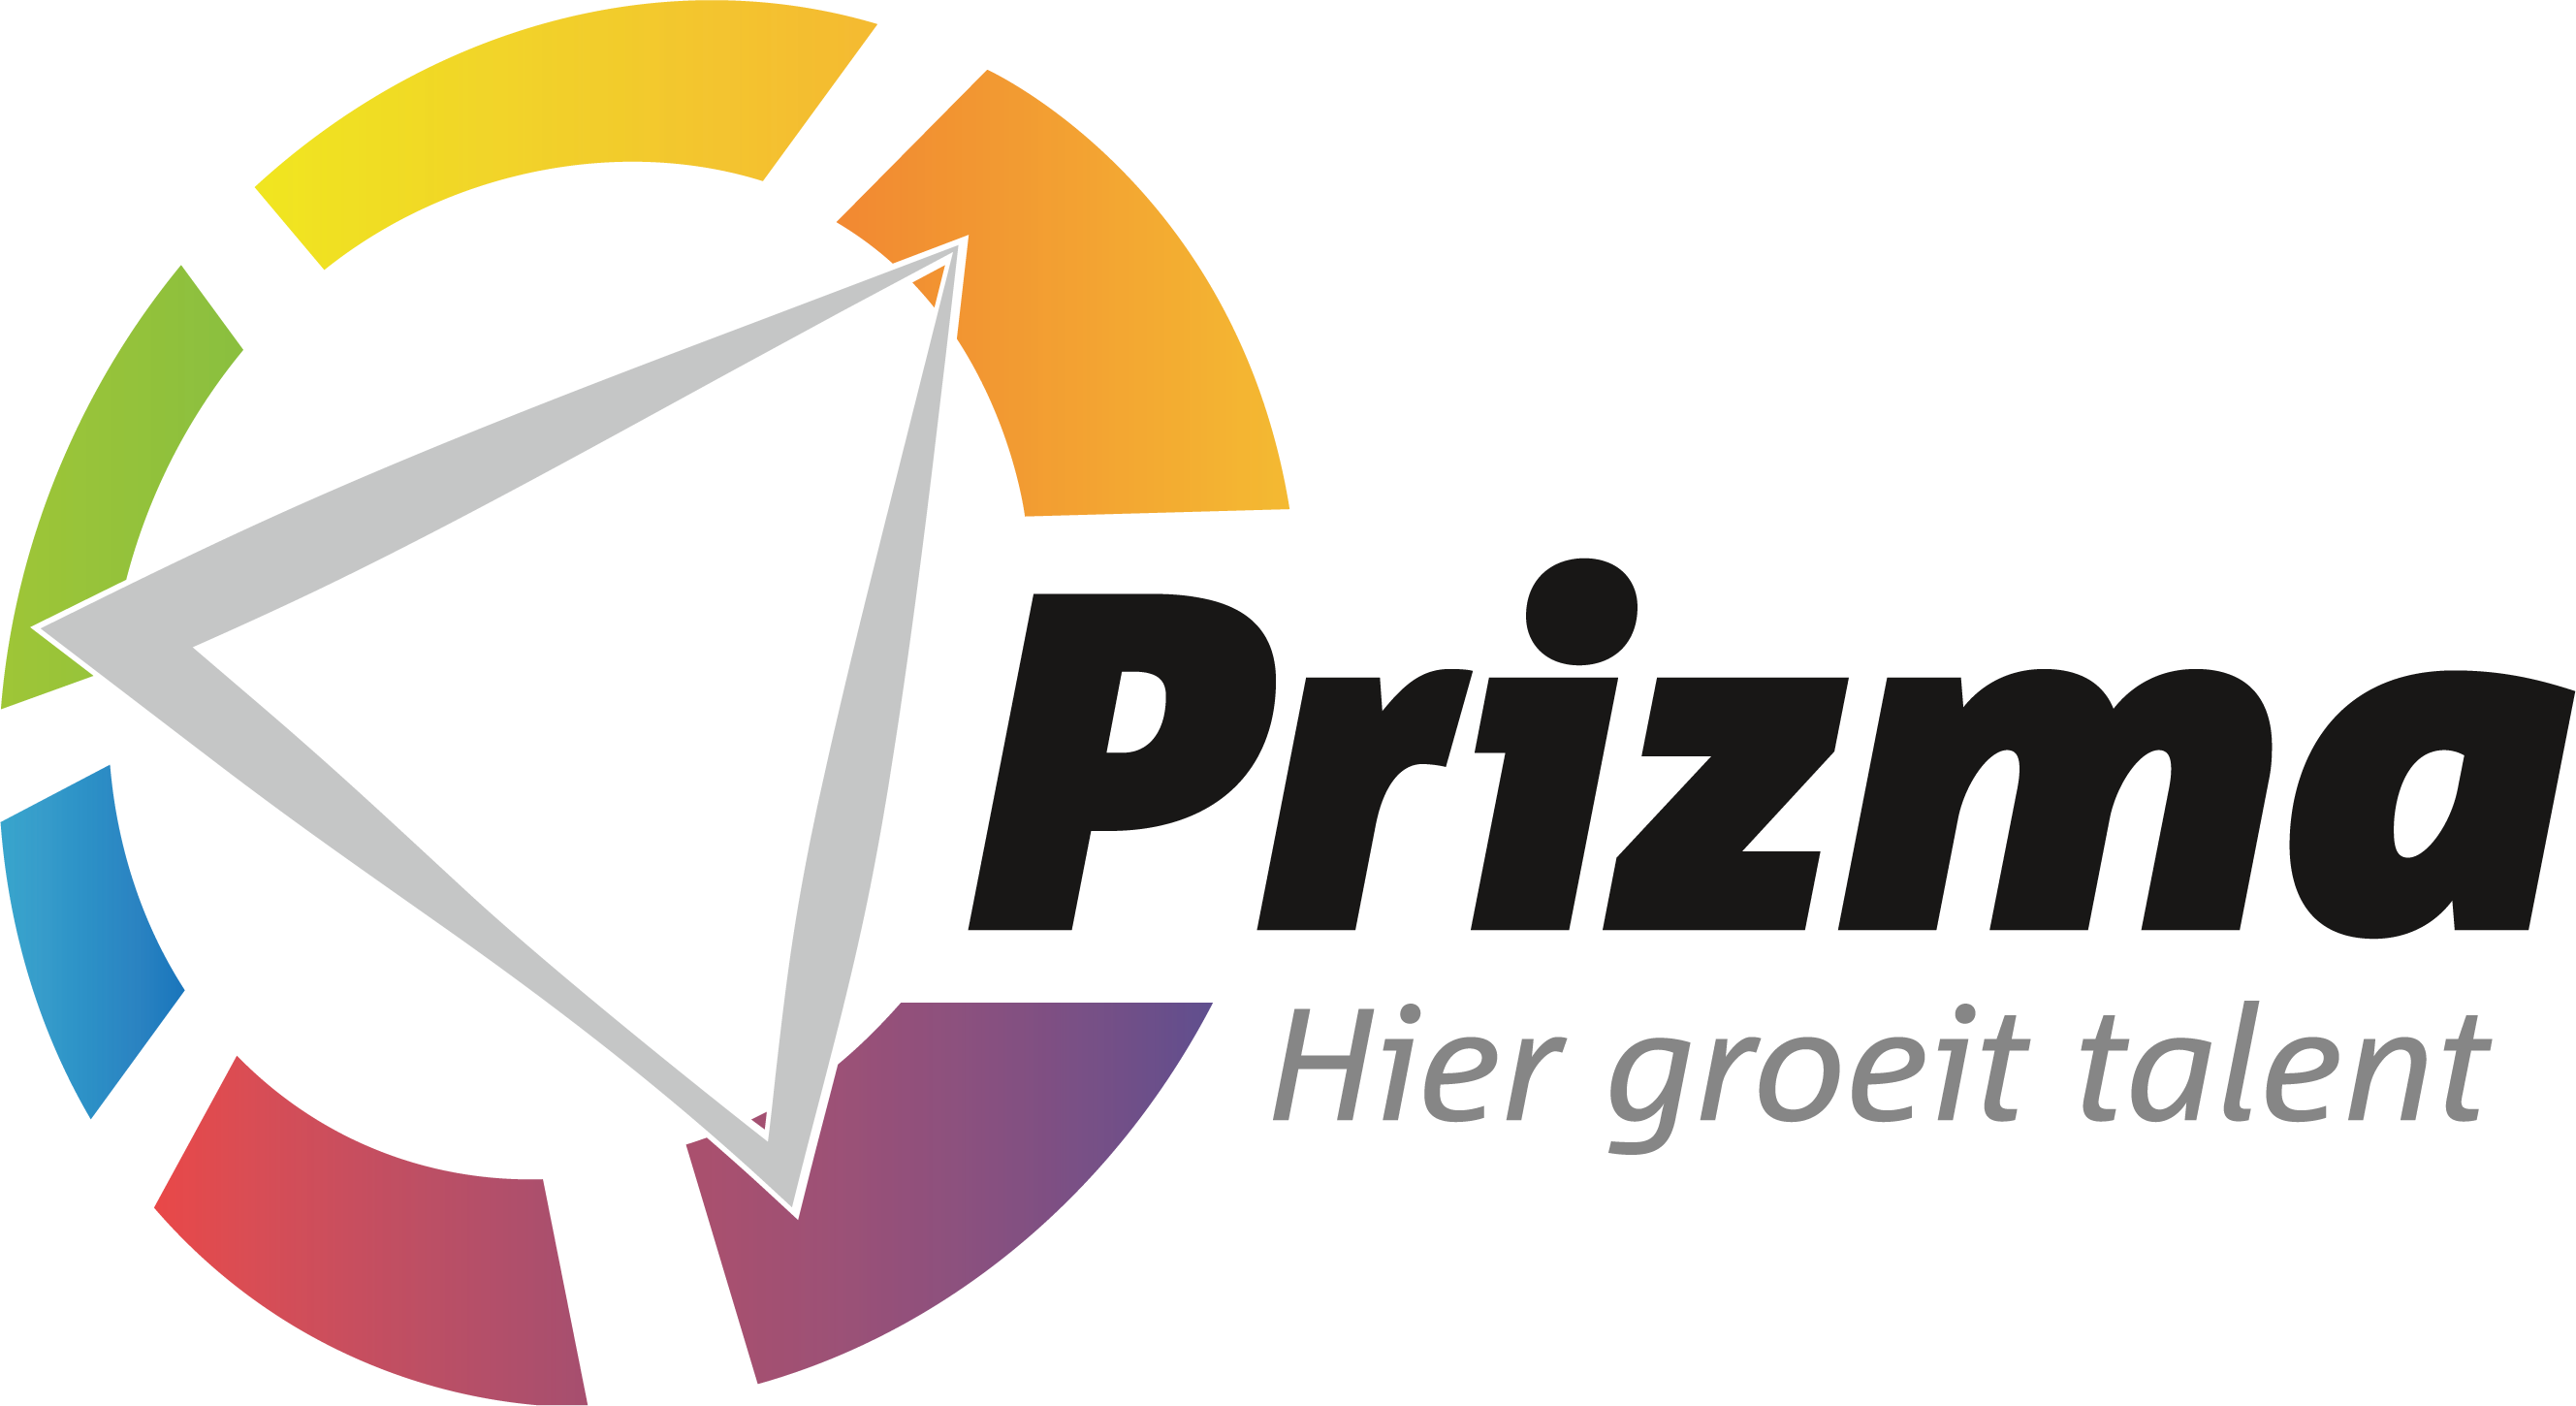 Prizma logo